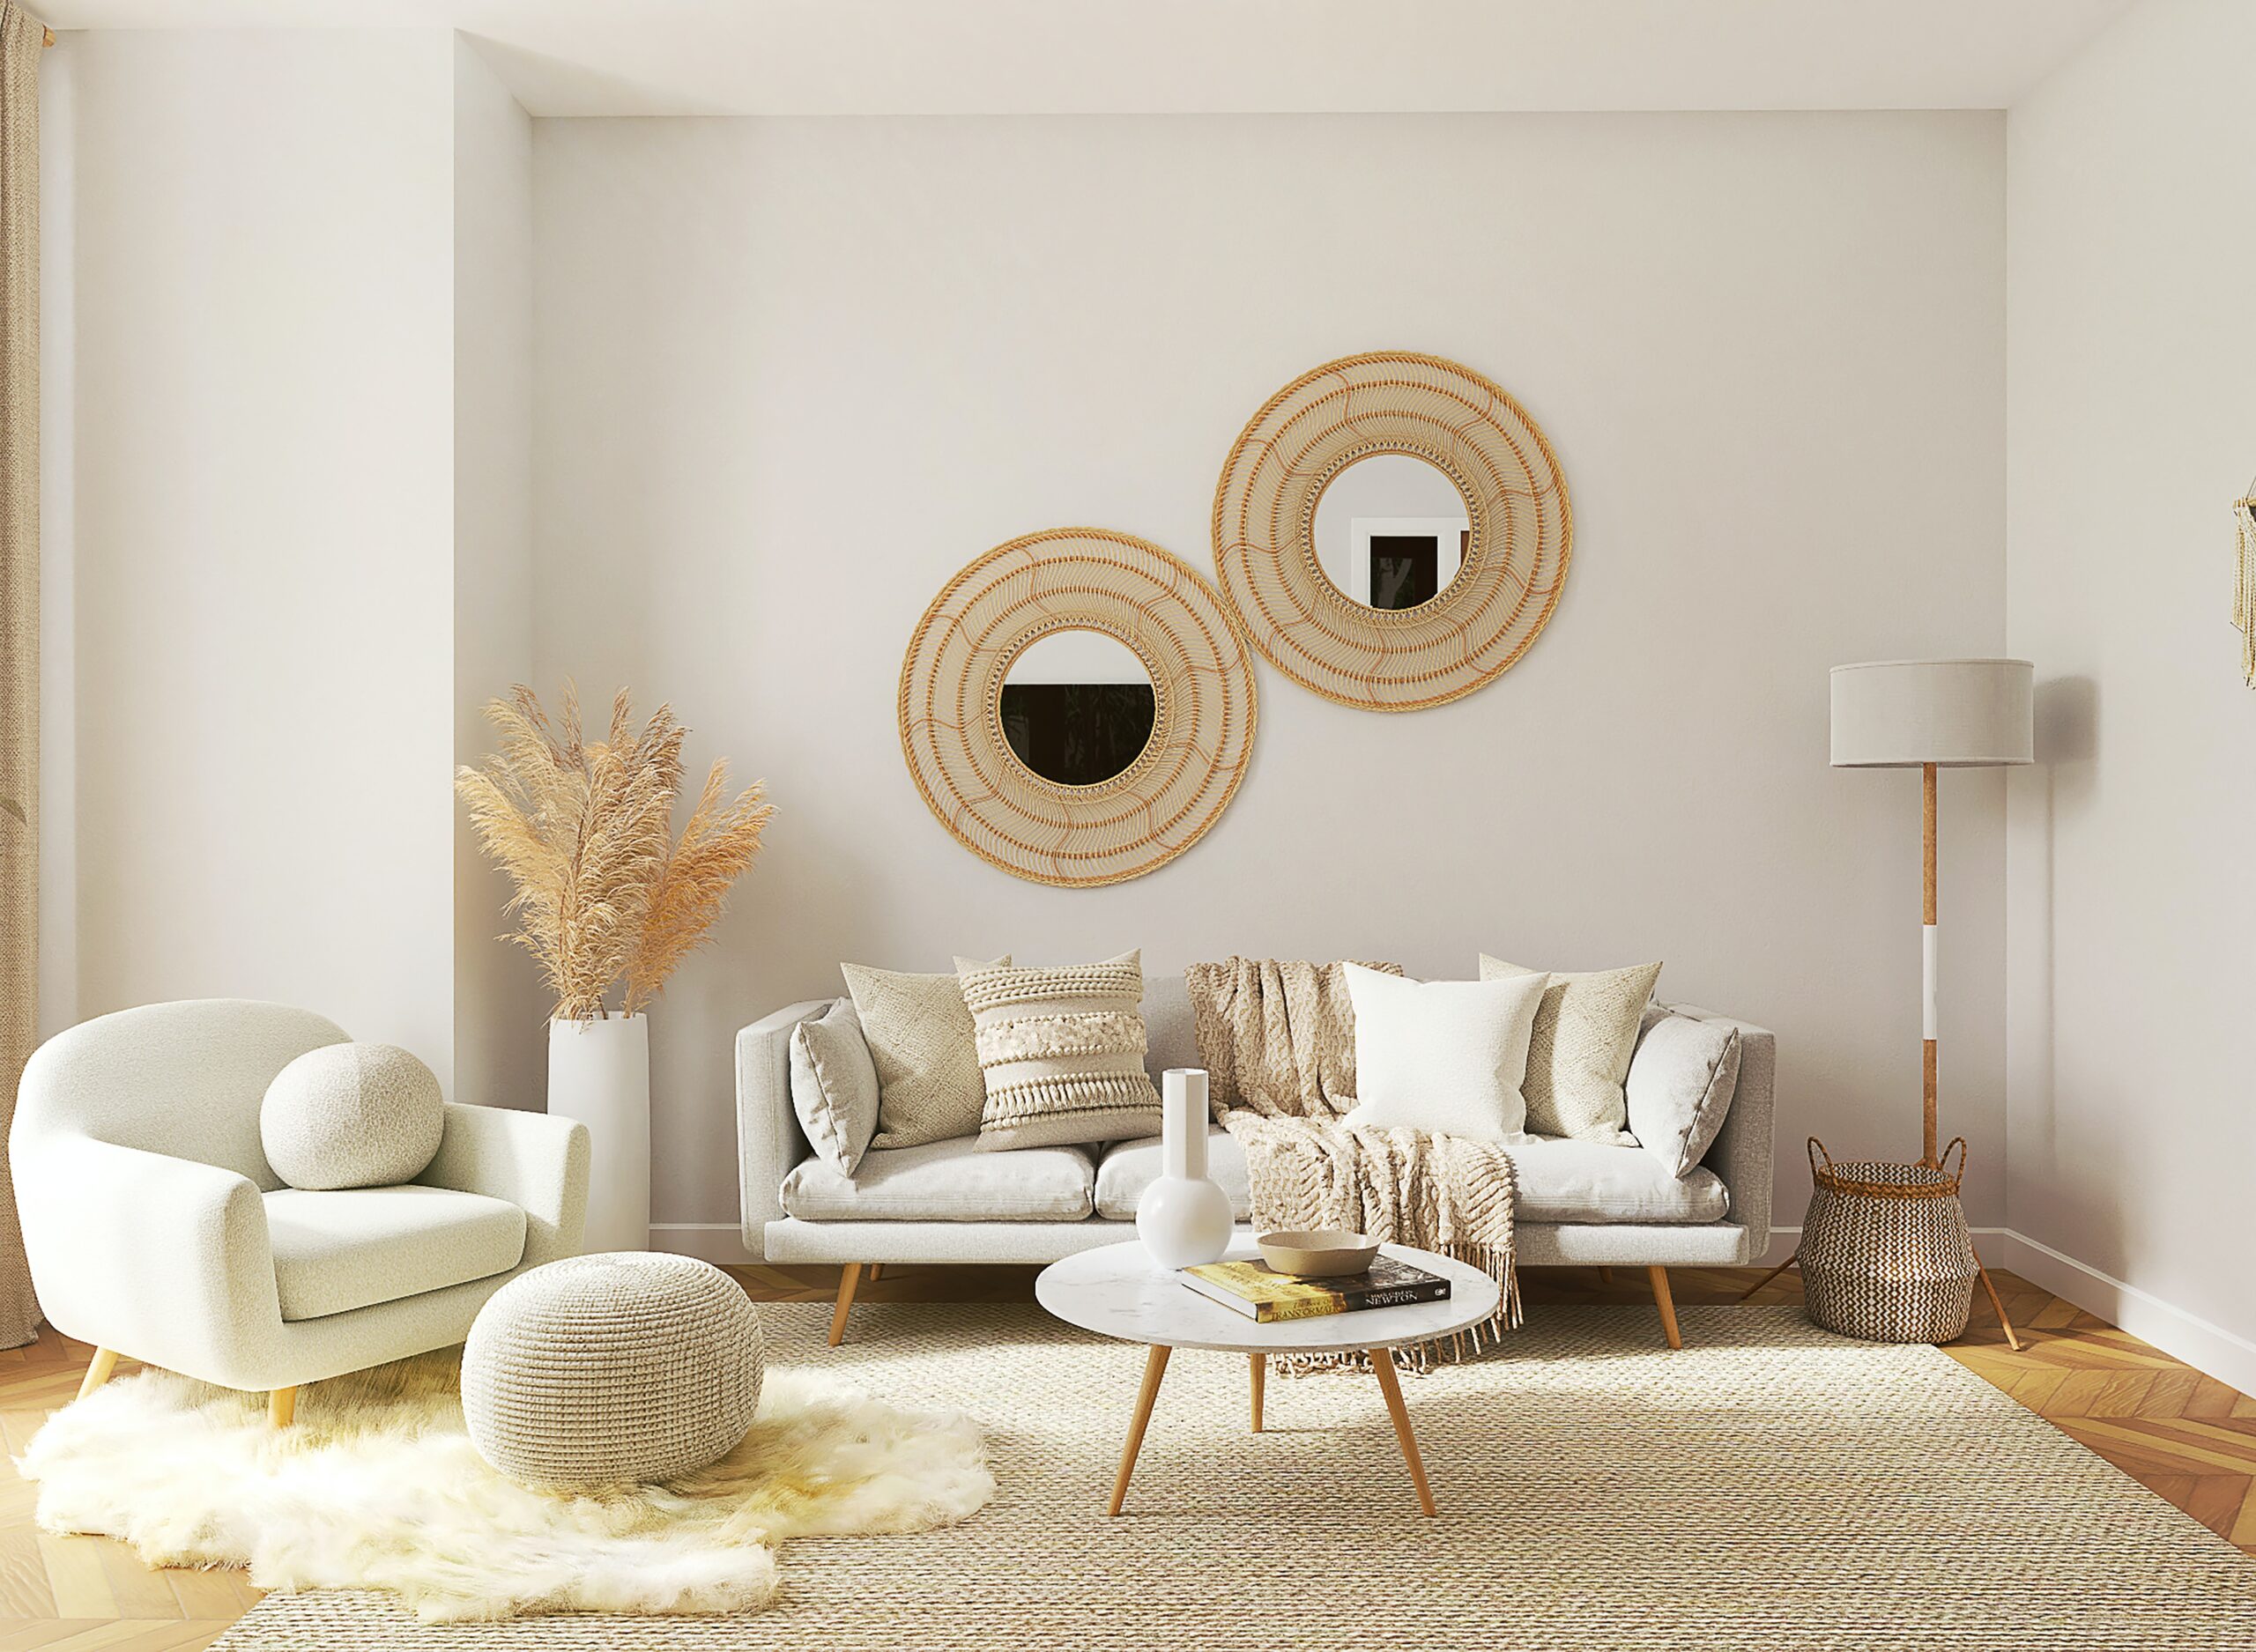 Living room in beige hues